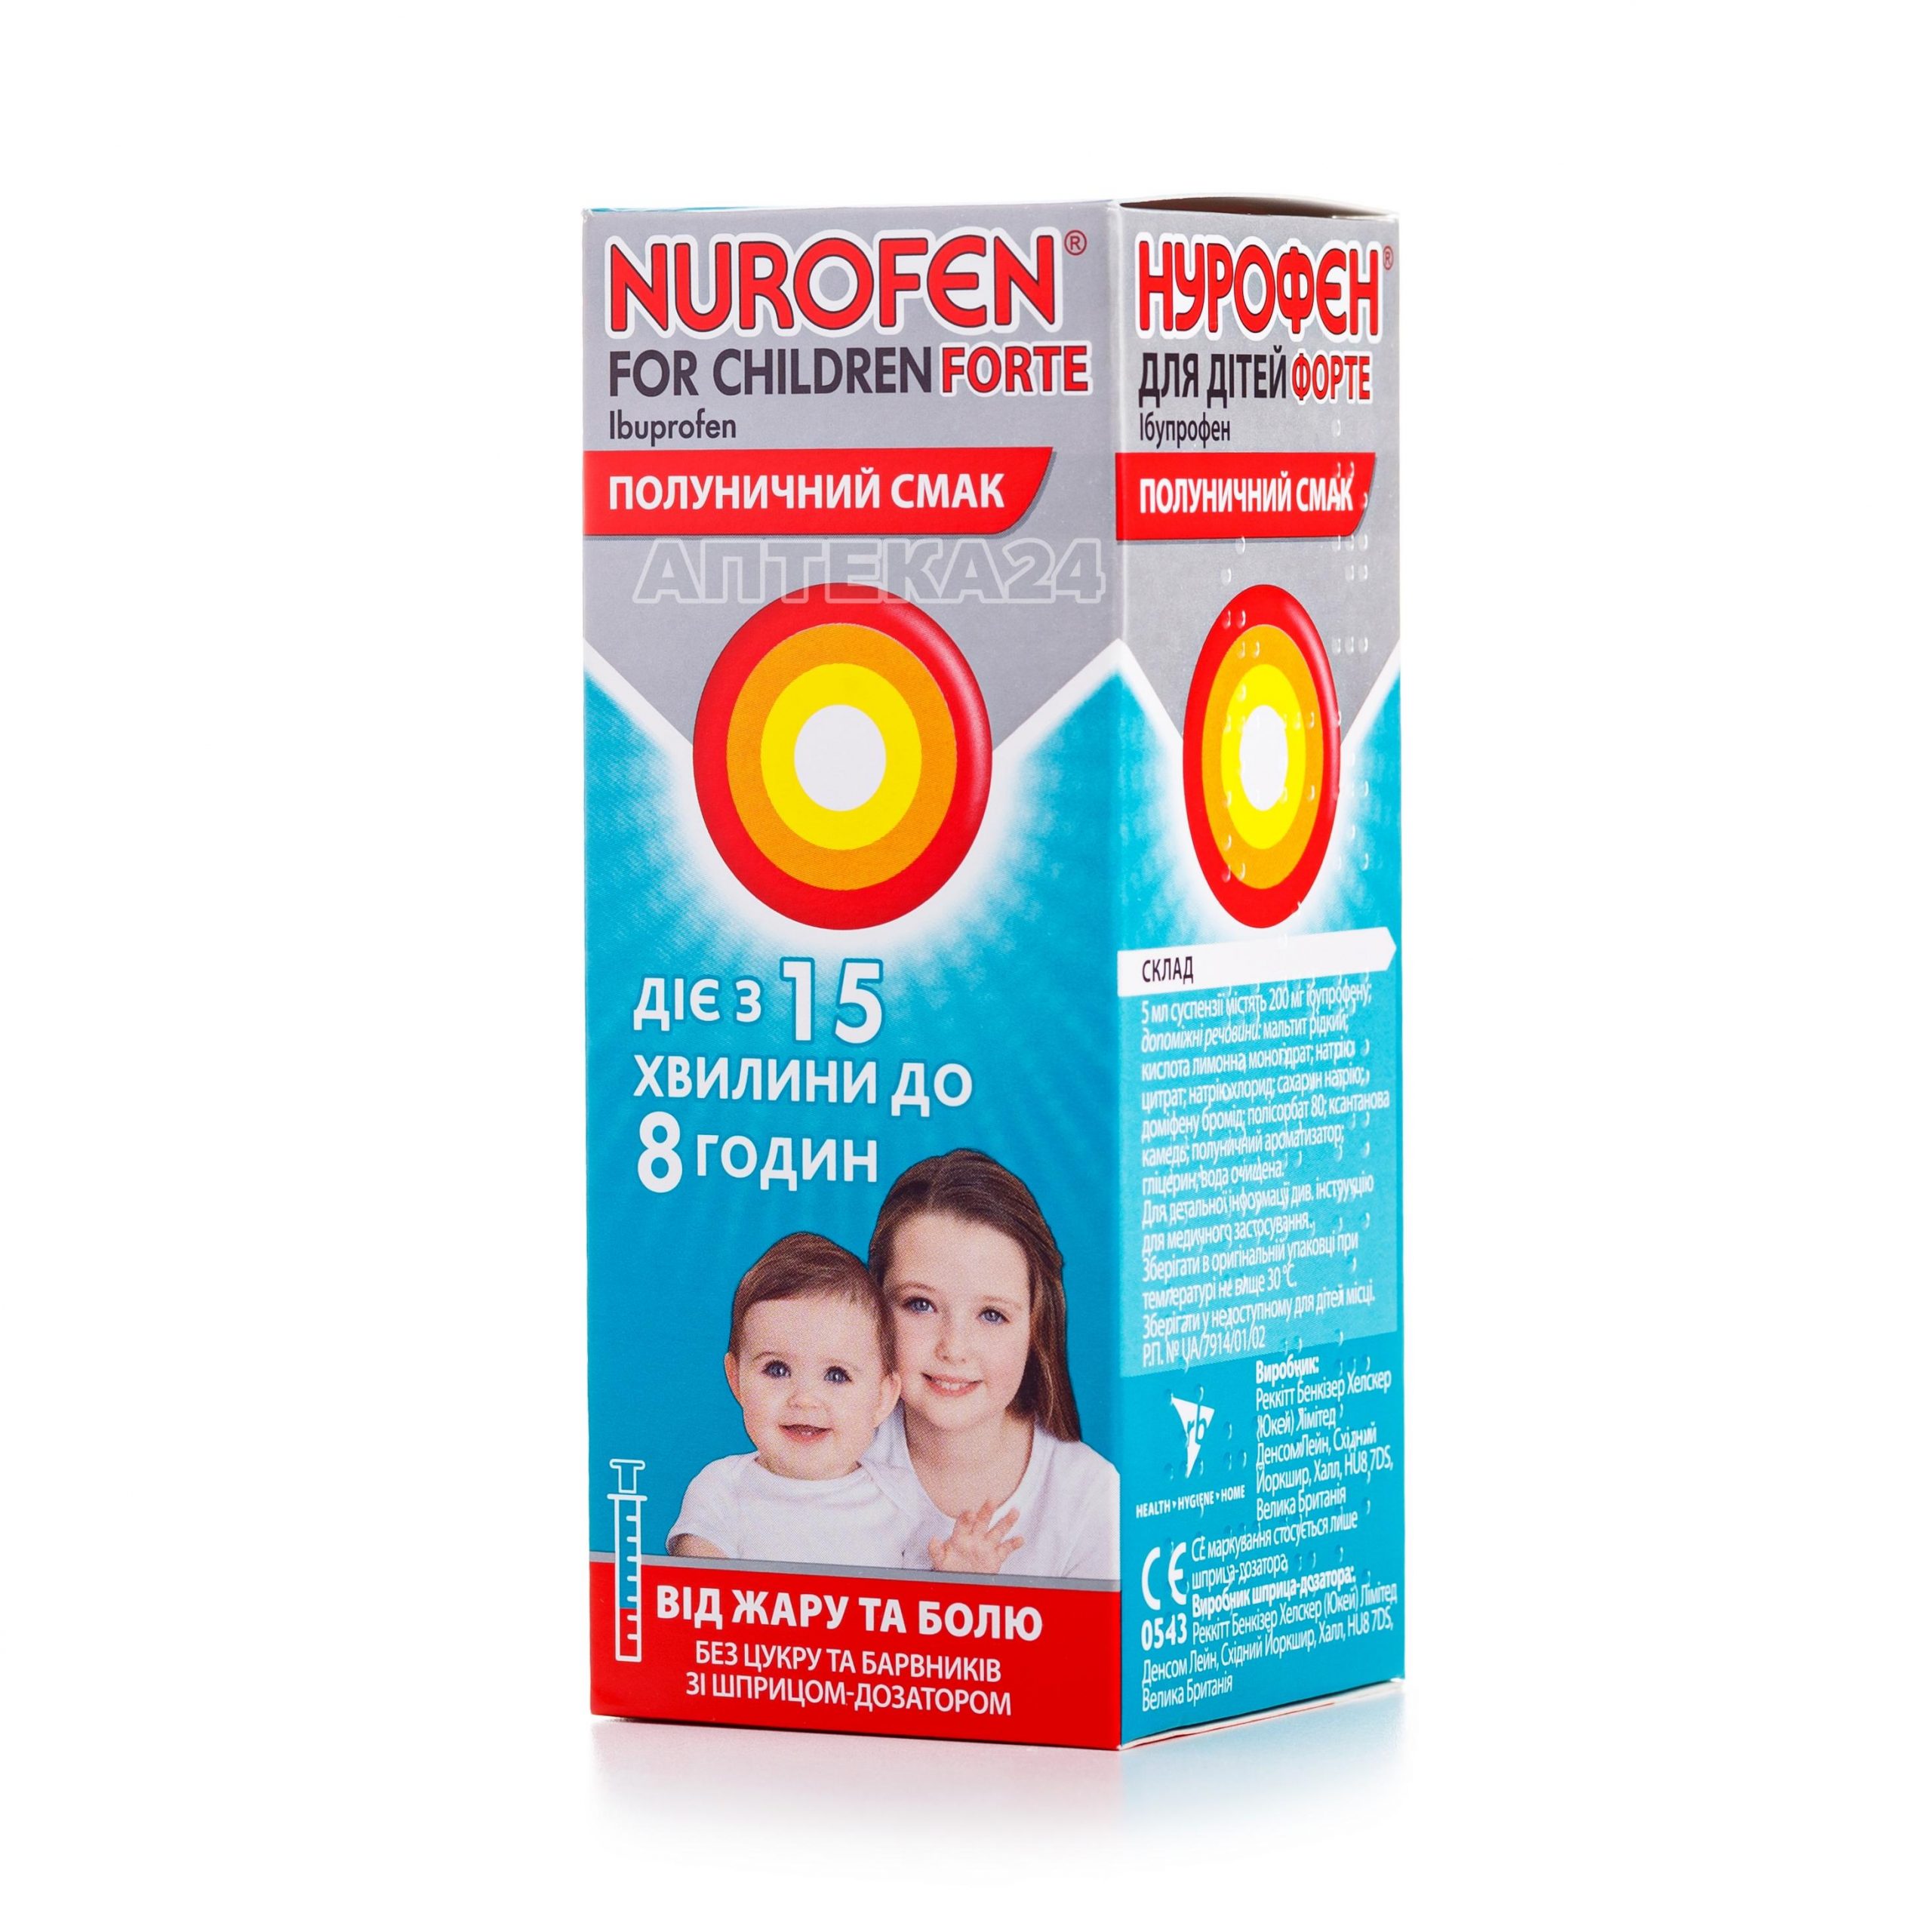 Нурофен для детей Форте суспензия с клубничным вкусом 100 мл_6001c67fbfc44.jpeg